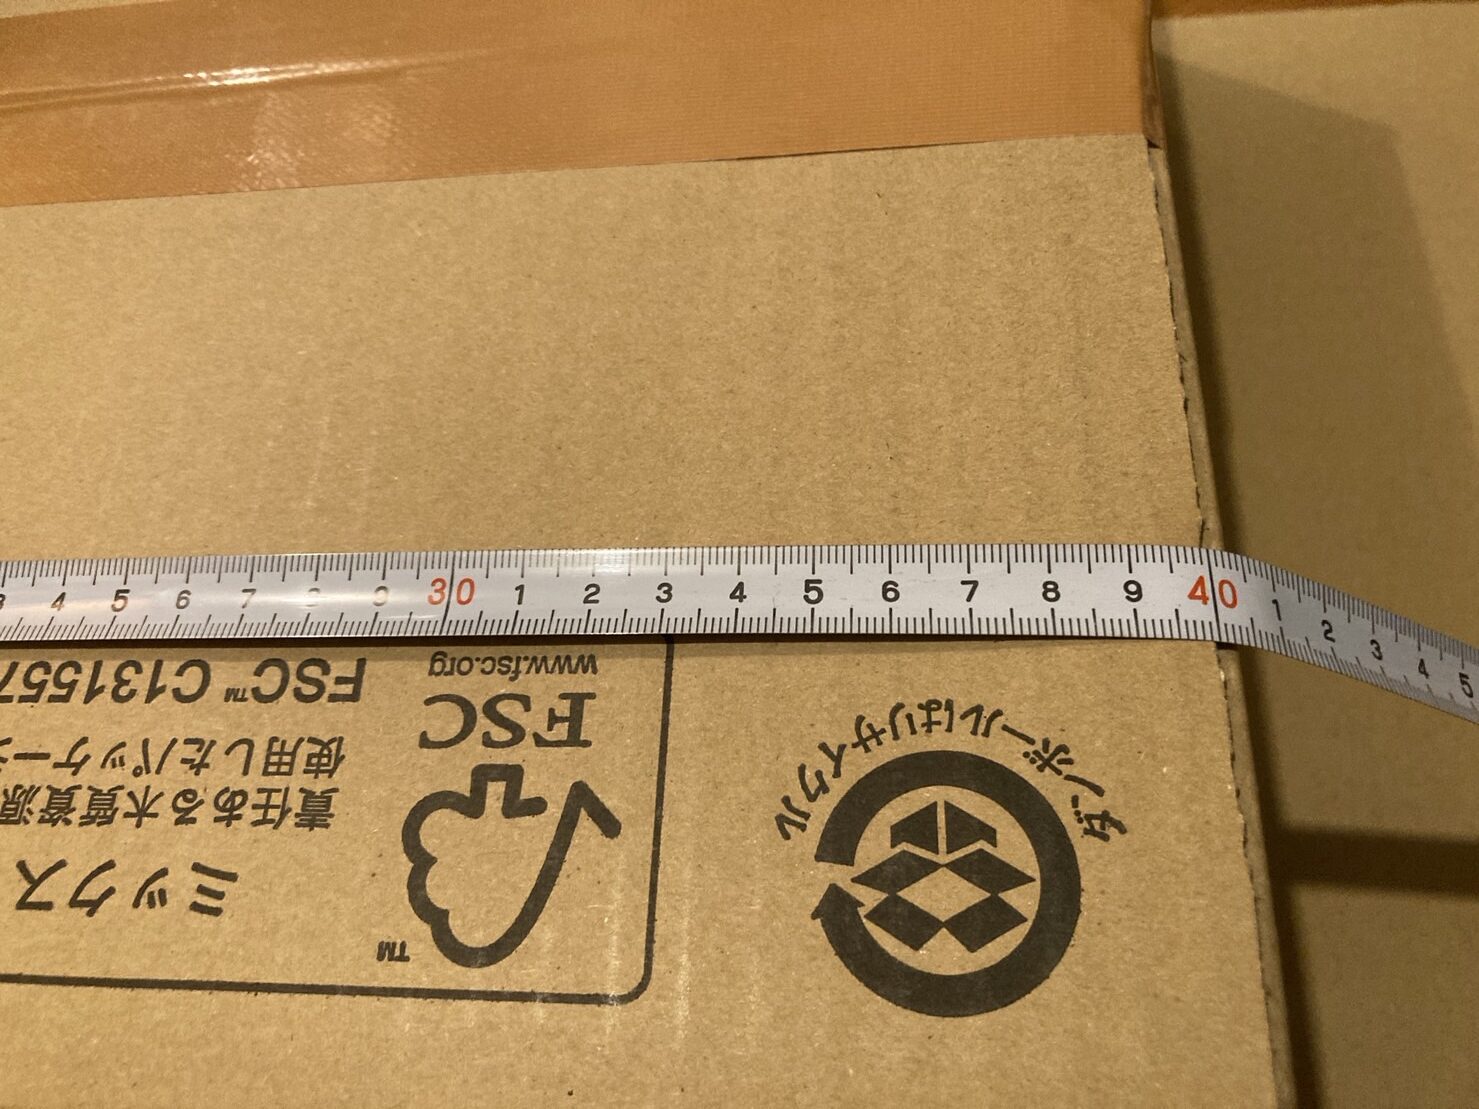 リングフィットアドベンチャーの梱包に使用したダンボールの横サイズ